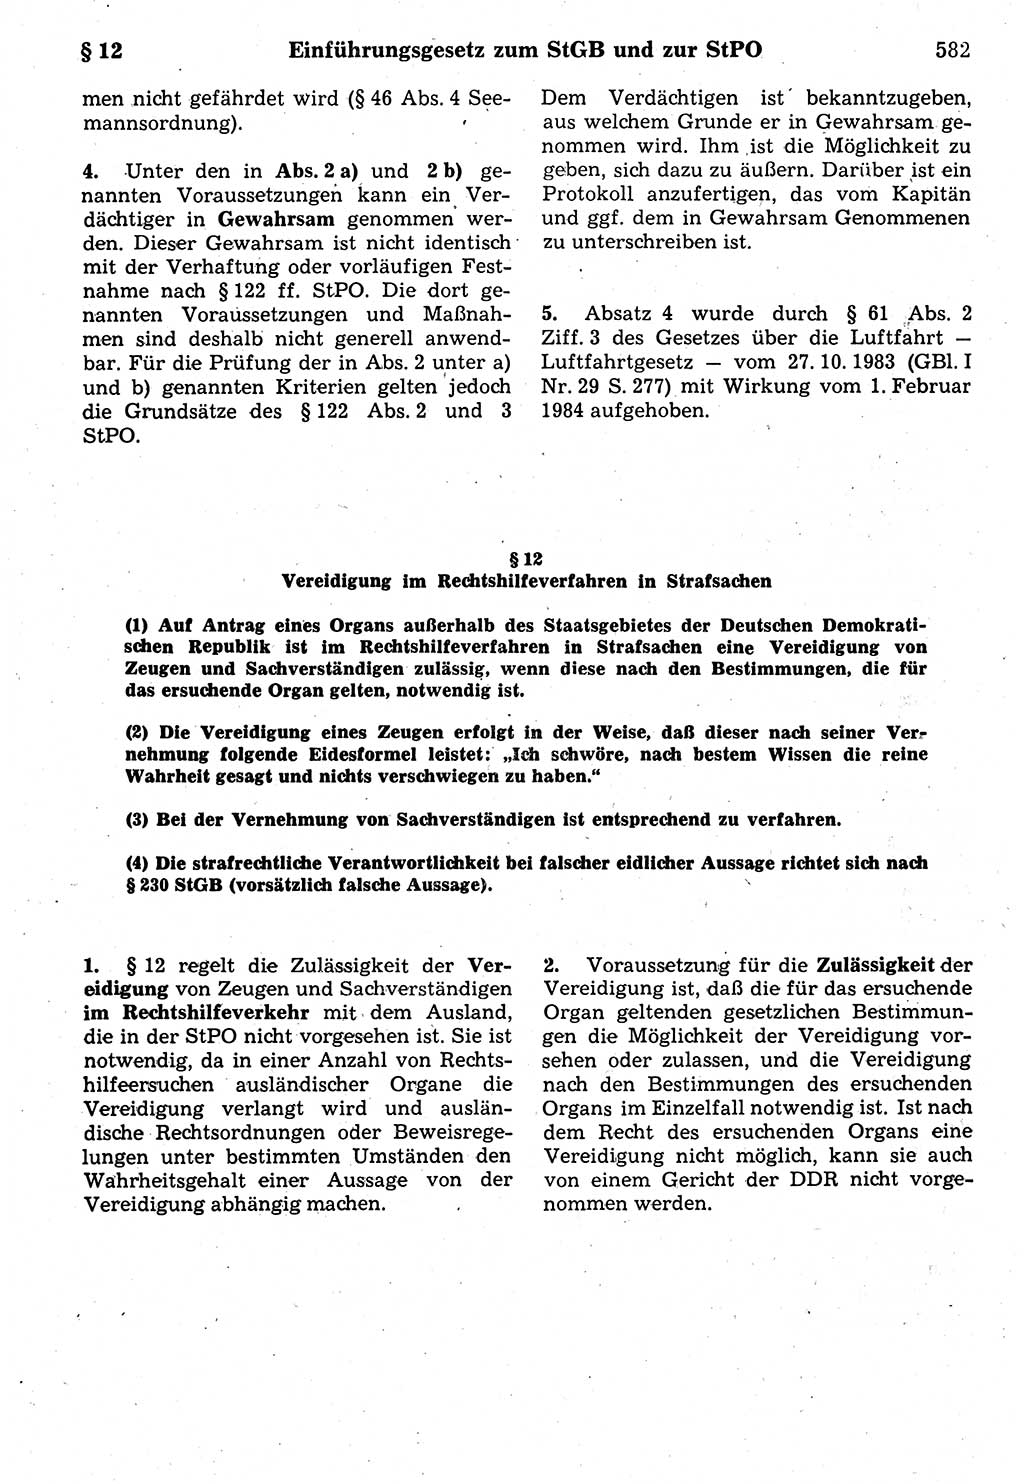 Strafrecht der Deutschen Demokratischen Republik (DDR), Kommentar zum Strafgesetzbuch (StGB) 1987, Seite 582 (Strafr. DDR Komm. StGB 1987, S. 582)